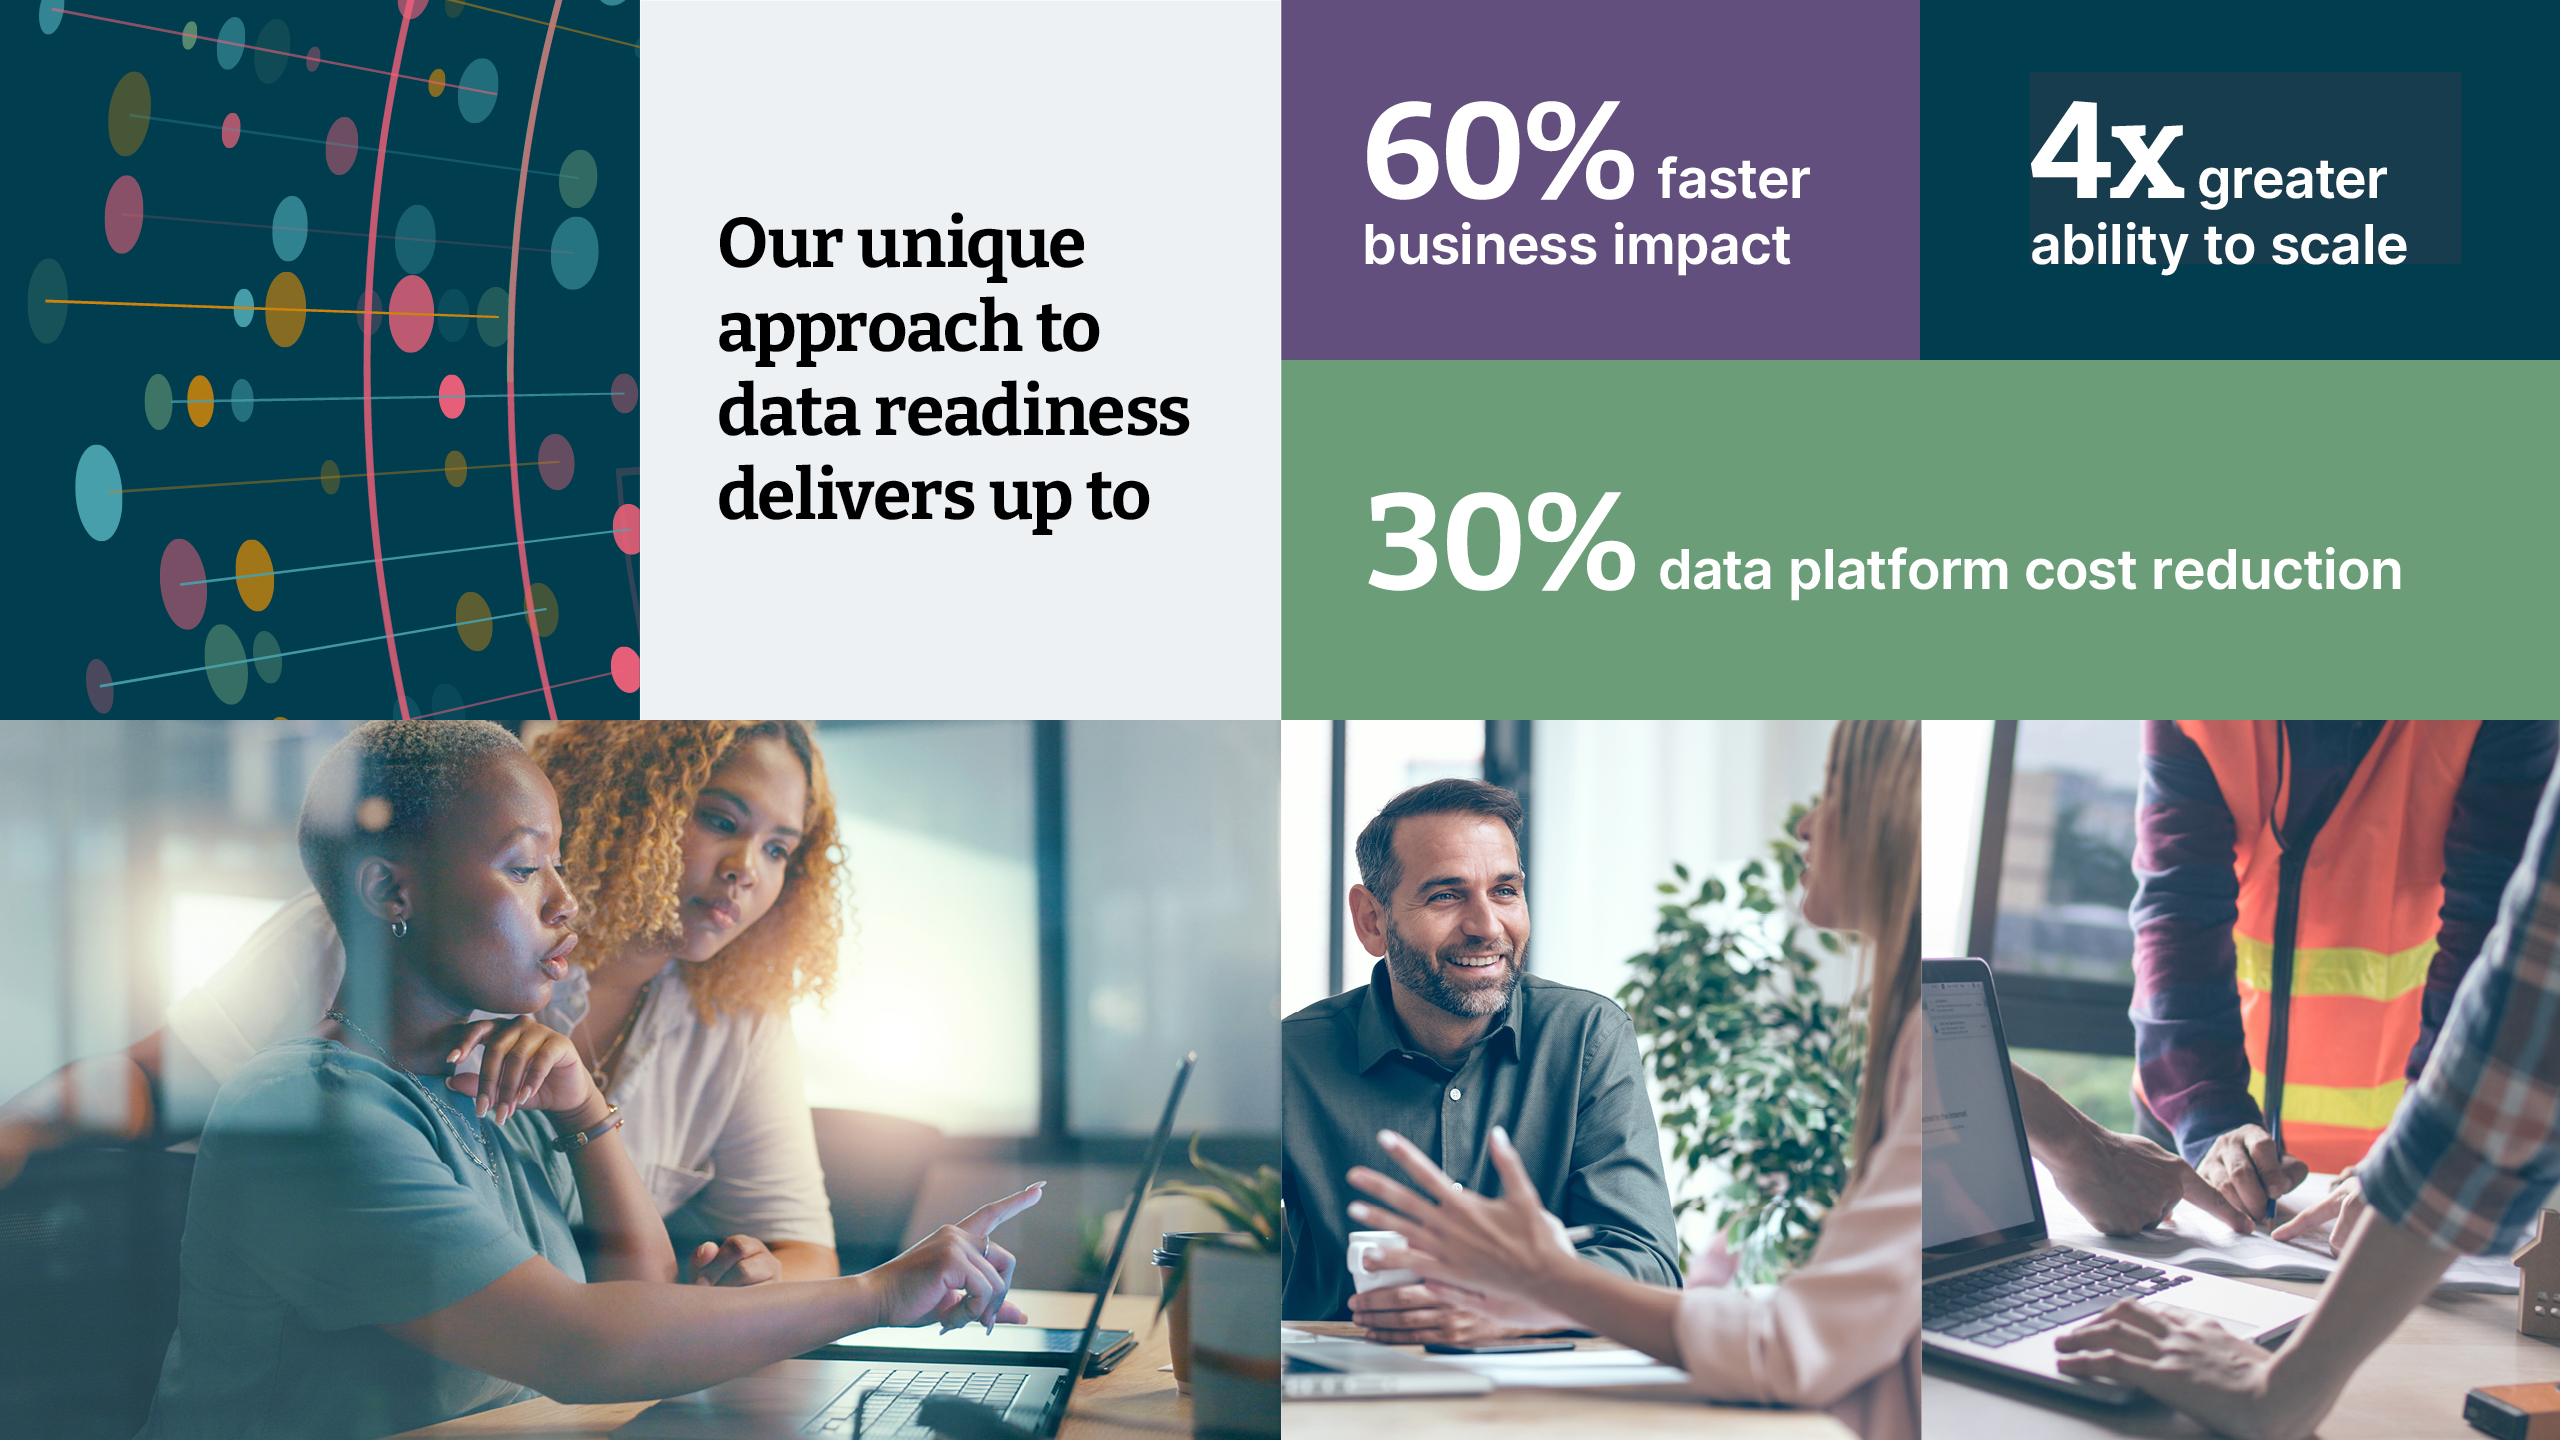   Nuestro enfoque único para la preparación de datos ofrece hasta: 1) un impacto empresarial un 60% más rápido 2) una capacidad cuatro veces mayor para escalar 3) una reducción del coste de la plataforma de datos del 30%. 